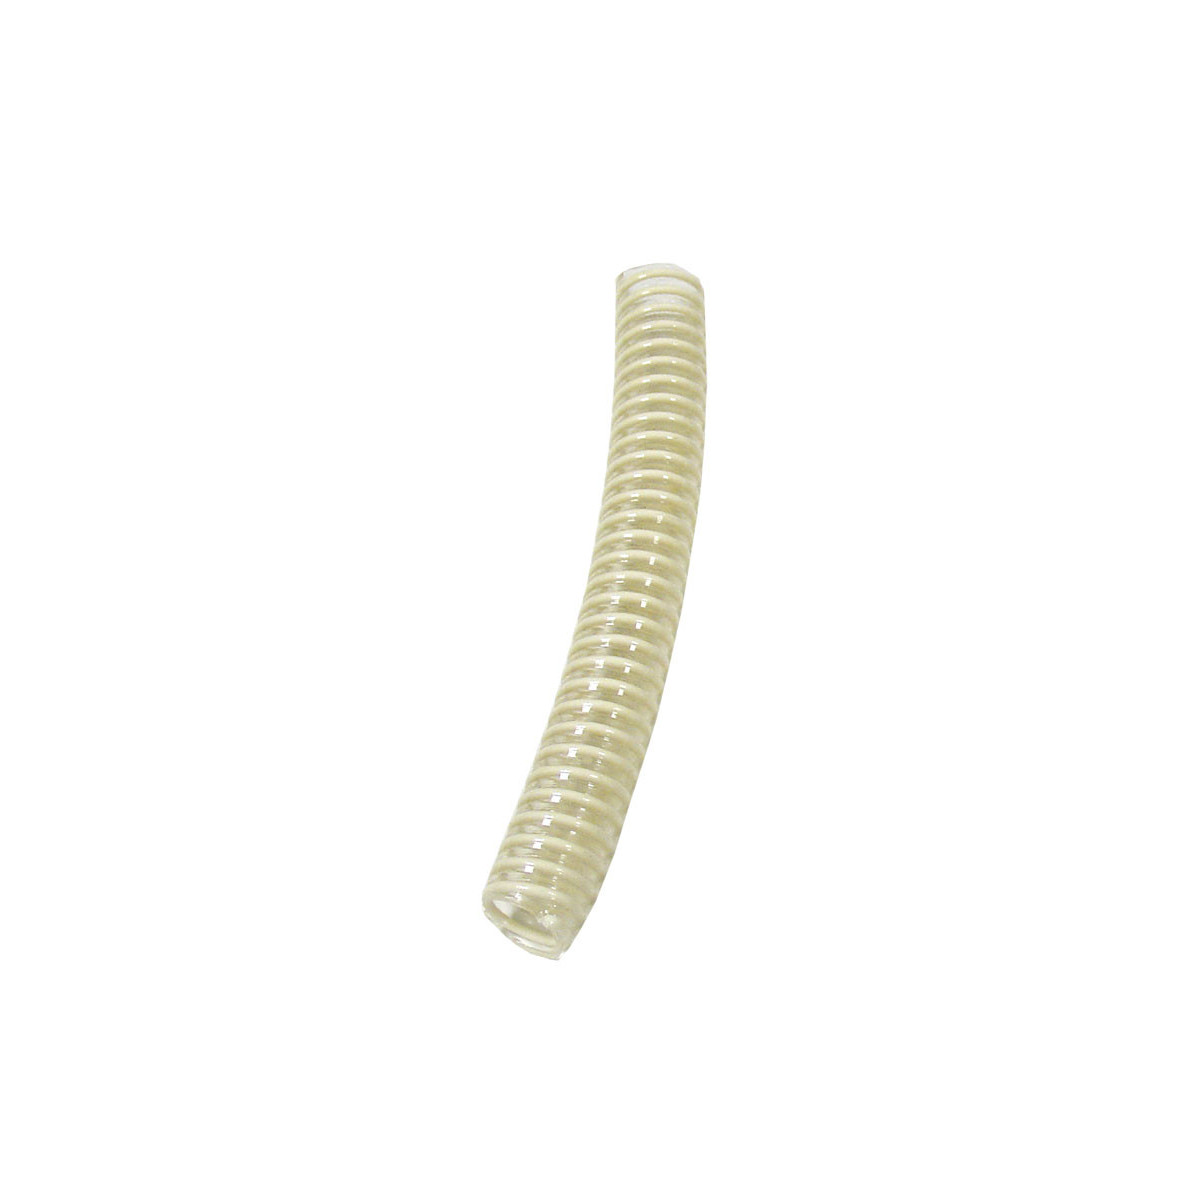 TUYAU Ø 40 mm, 1 pouce 1/2 pour pompe à miel, en plastique alimentaire  renforcé par une spirale en nylon